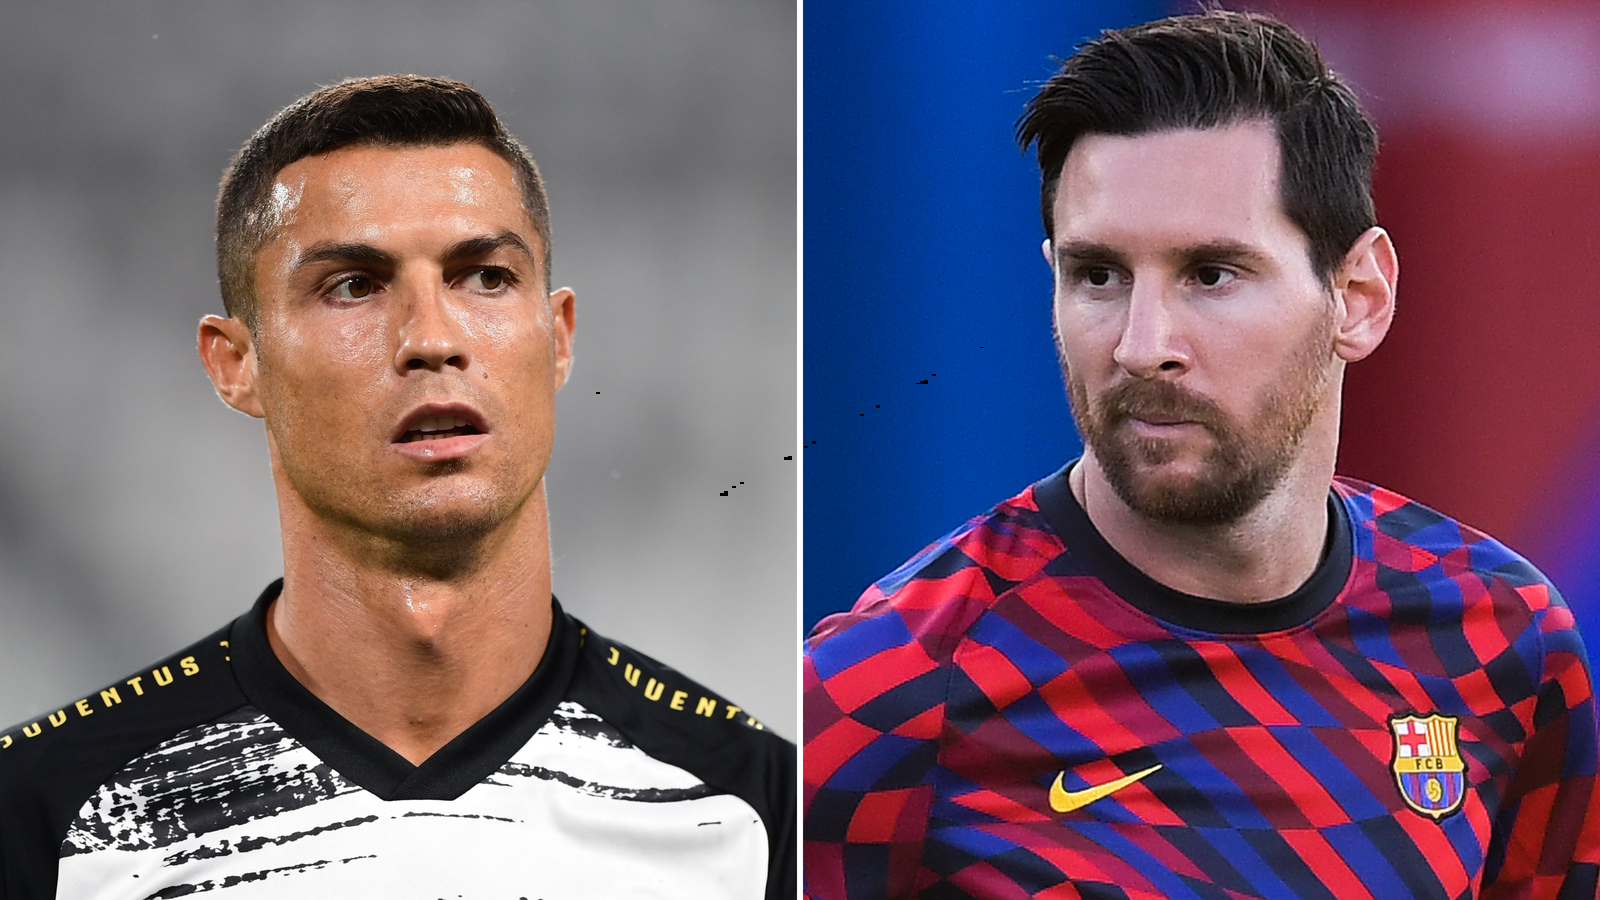 Liga de Campeones: Messi y Cristiano vuelven a enfrentarse - CNN Video